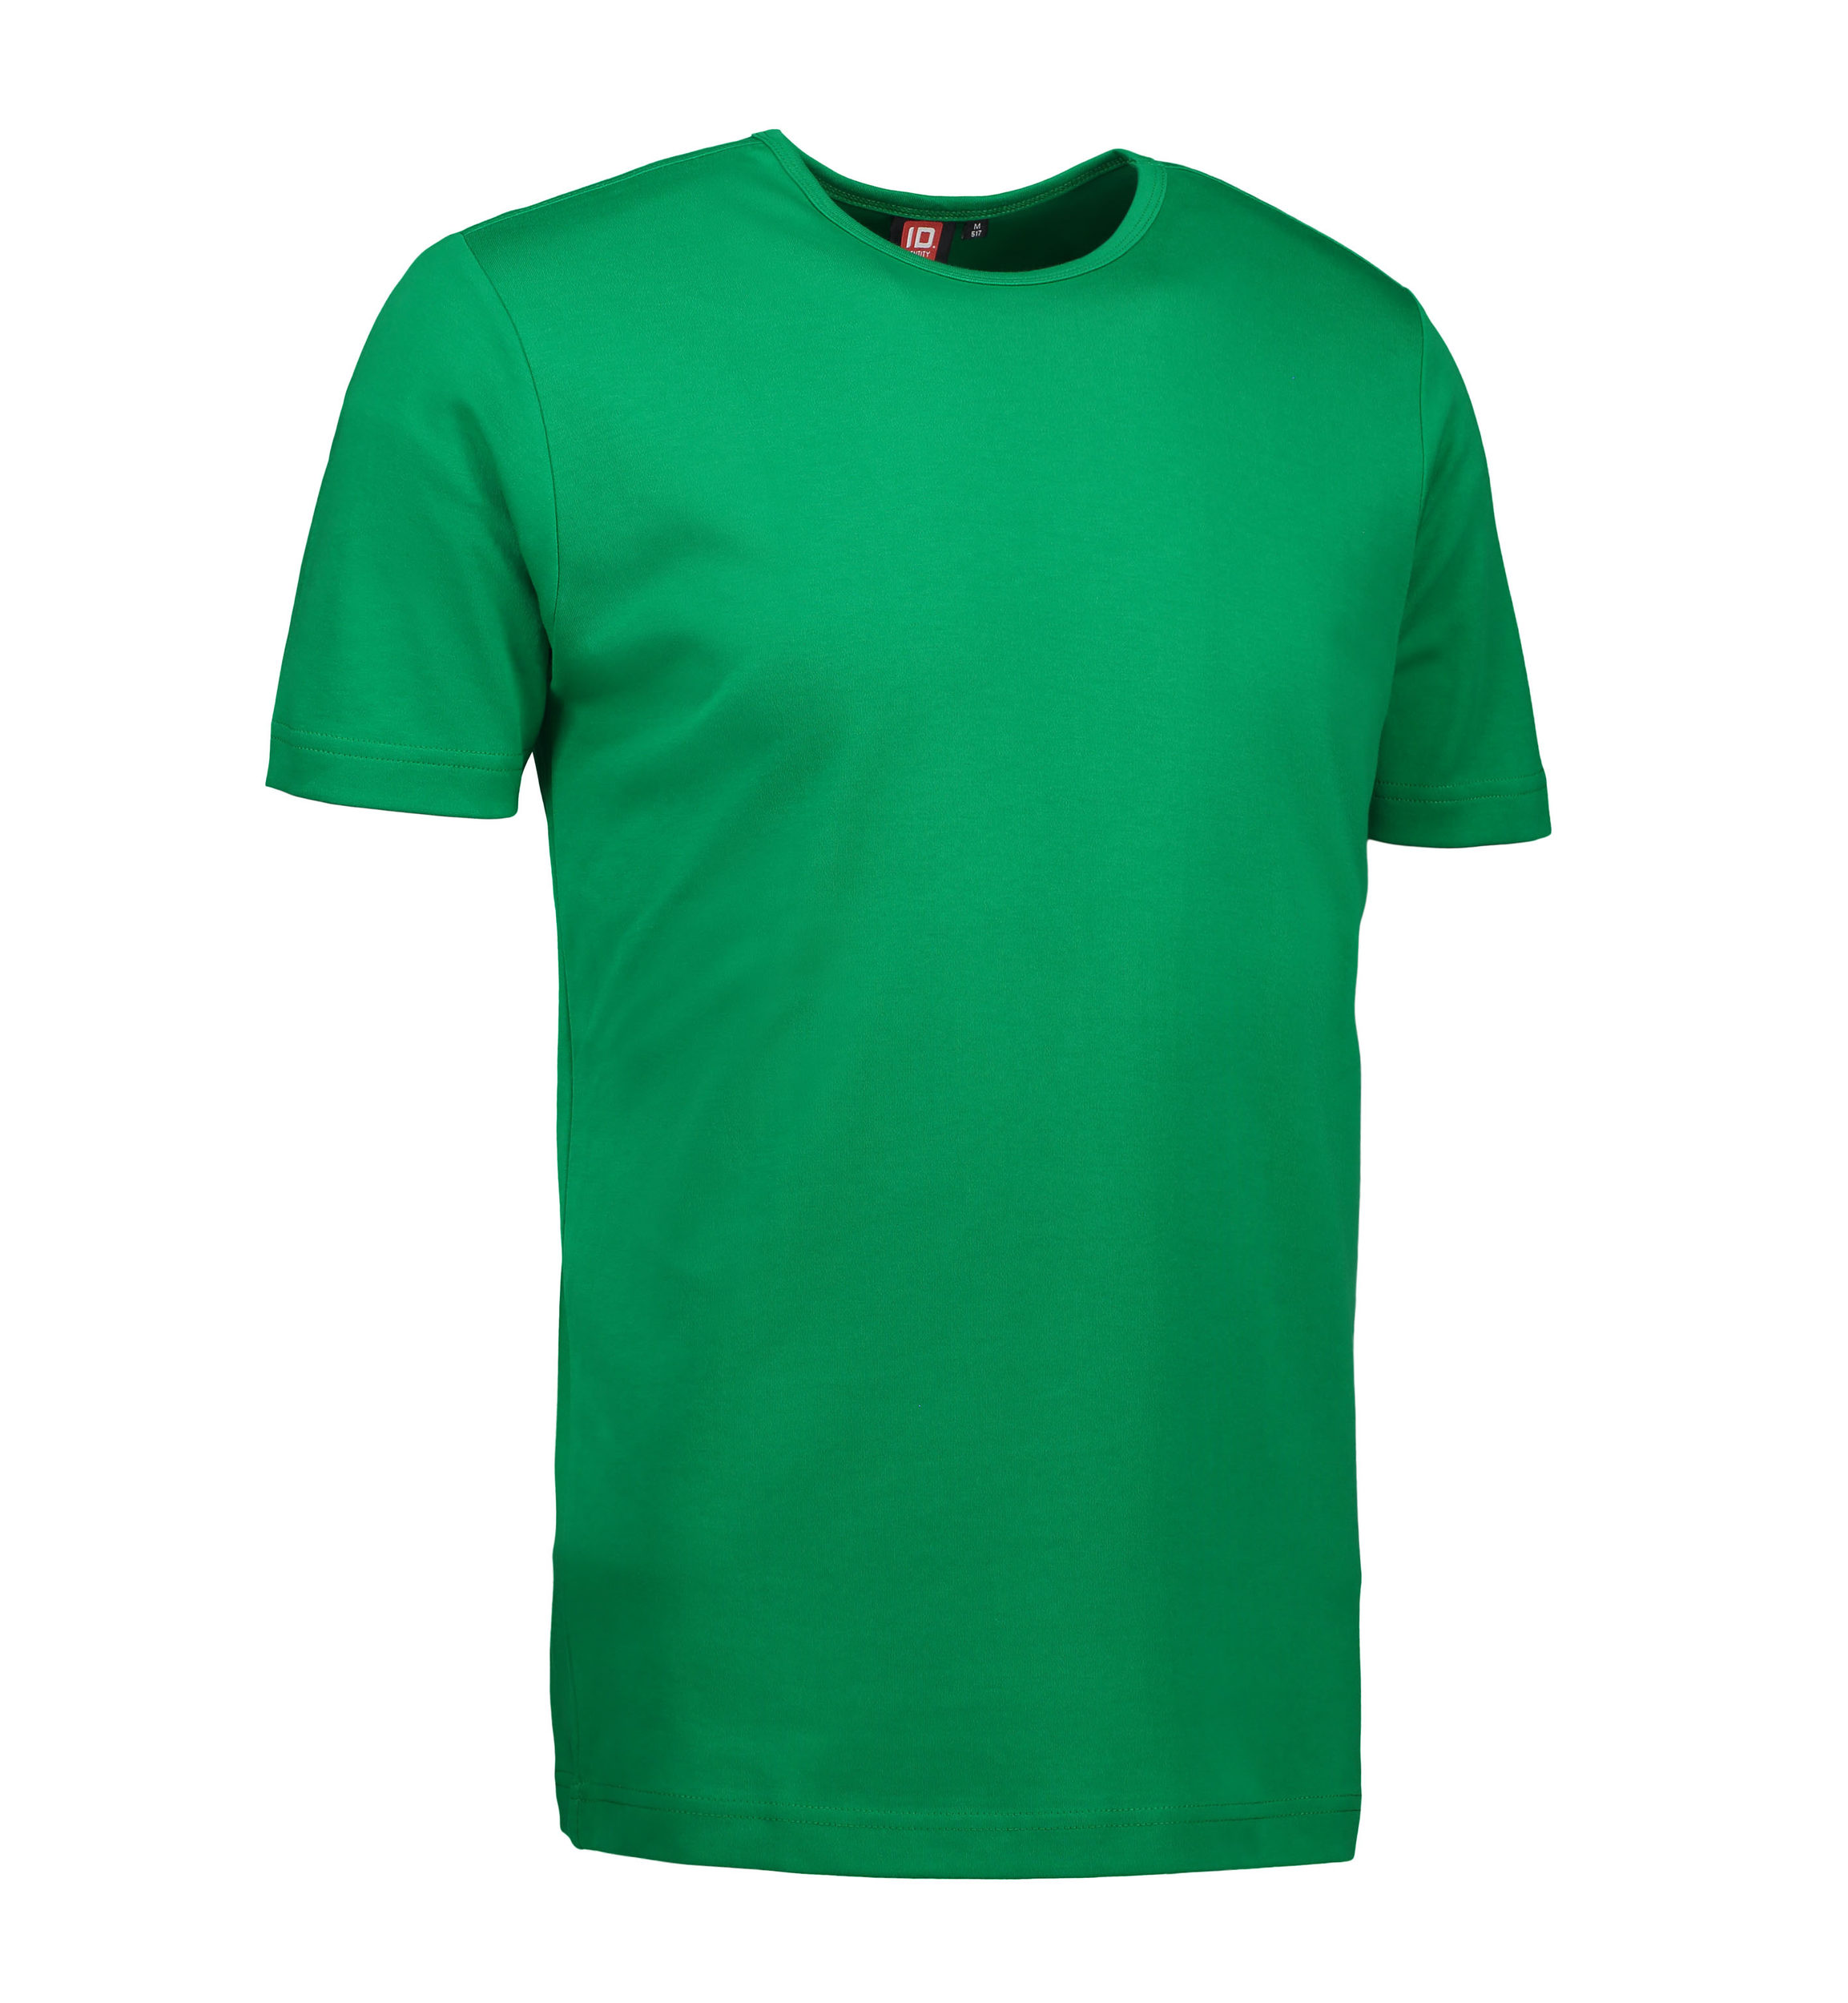 Billede af Grøn t-shirt med rund hals til mænd - S hos Sygeplejebutikken.dk